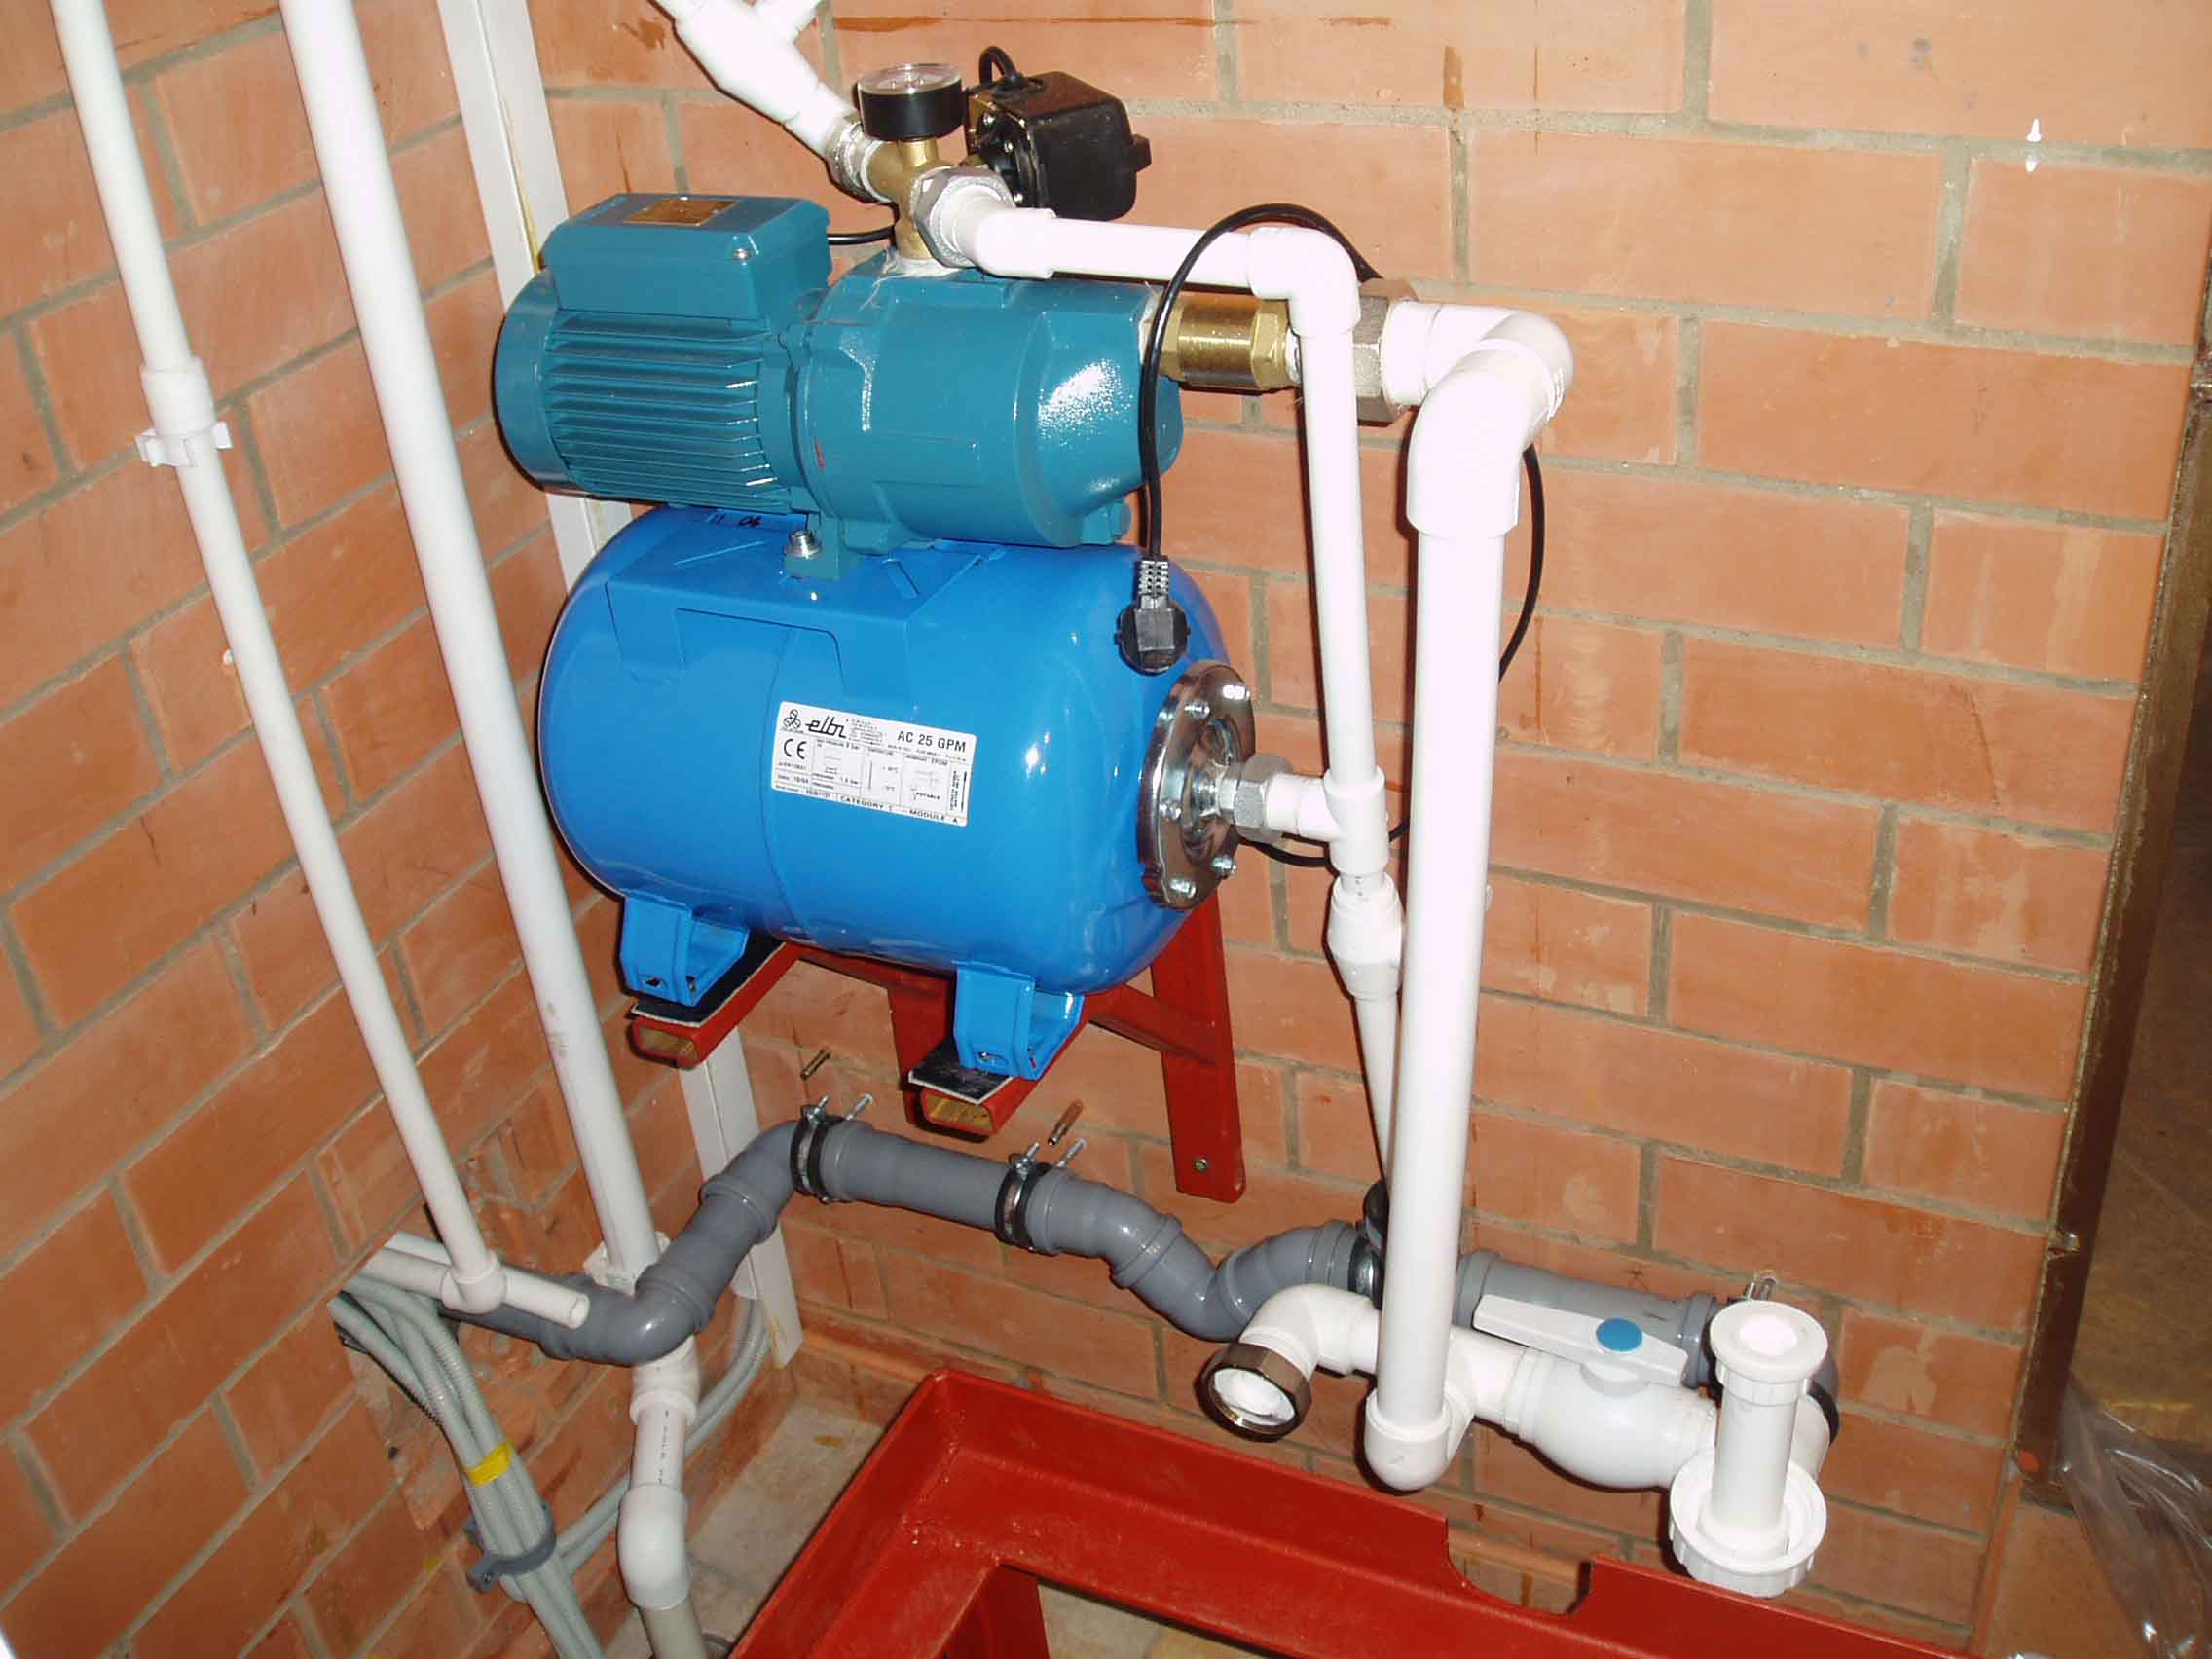 Πίεση νερού στο σύστημα παροχής νερού: σε διαμέρισμα, σε σπίτι